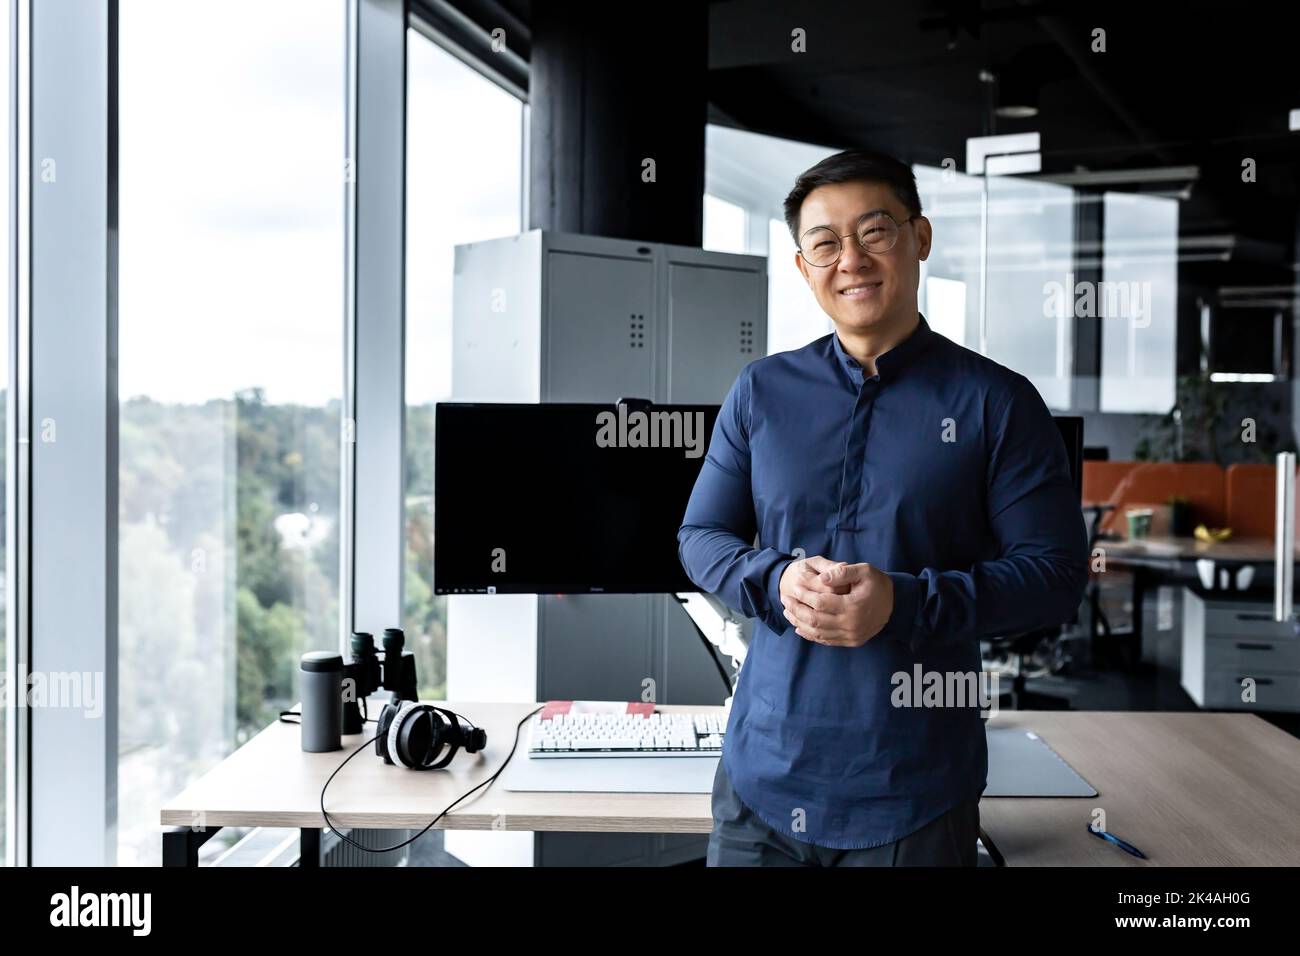 Programmierer in Brille und Hemd lächelnd und schauend auf Kamera, asiatischer Mann, der in einem modernen Computerunternehmen arbeitet, im Büro mit mehreren Computern und Monitoren arbeitet. Stockfoto